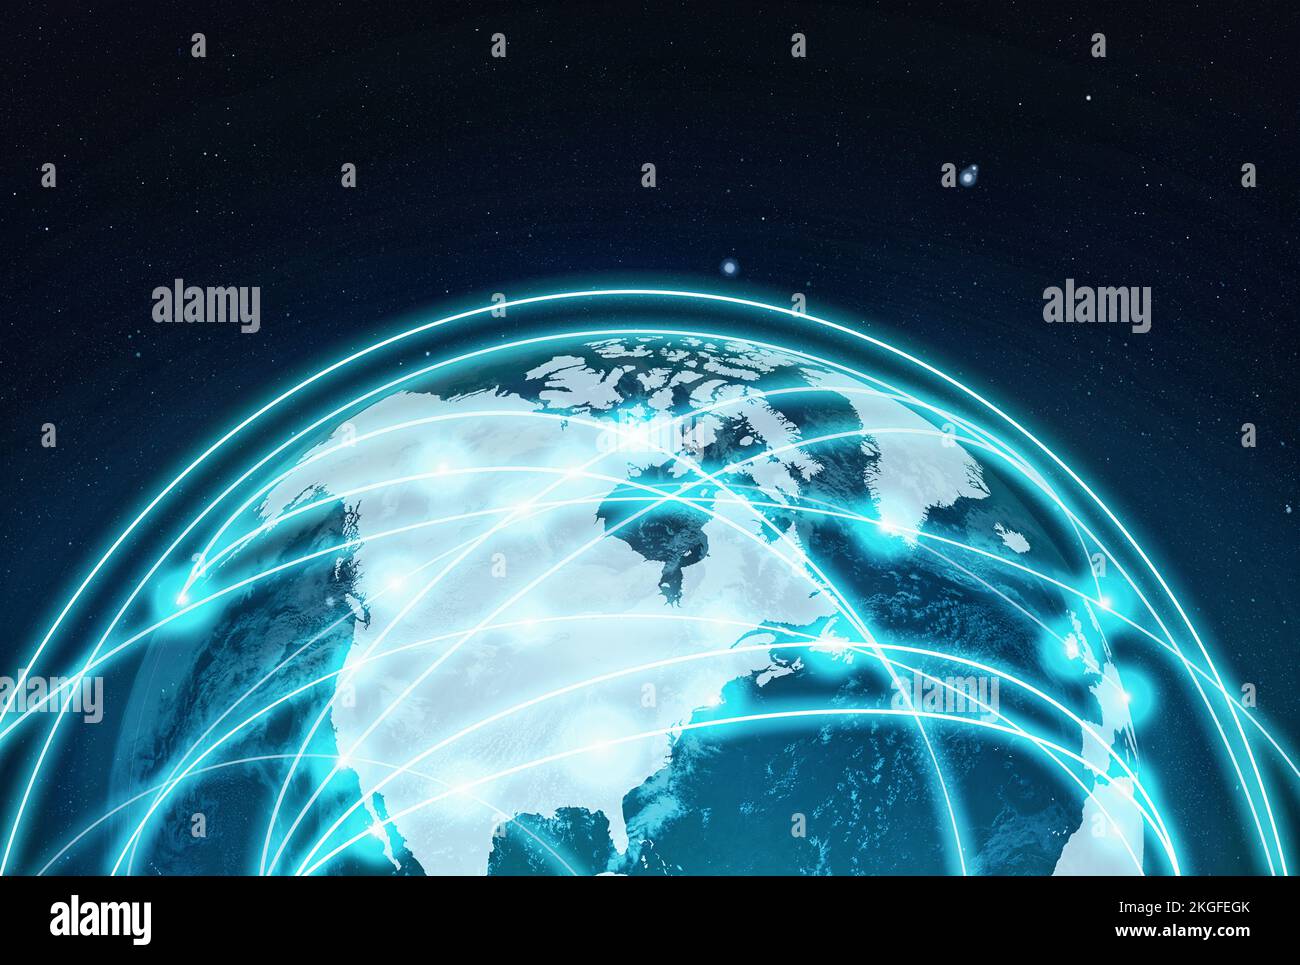 Die vernetzte Welt... Willkommen in der Zukunft. Eine abgeschnittene Sicht auf den Globus mit Ländern, die durch Informationsnetze miteinander verbunden sind. Stockfoto